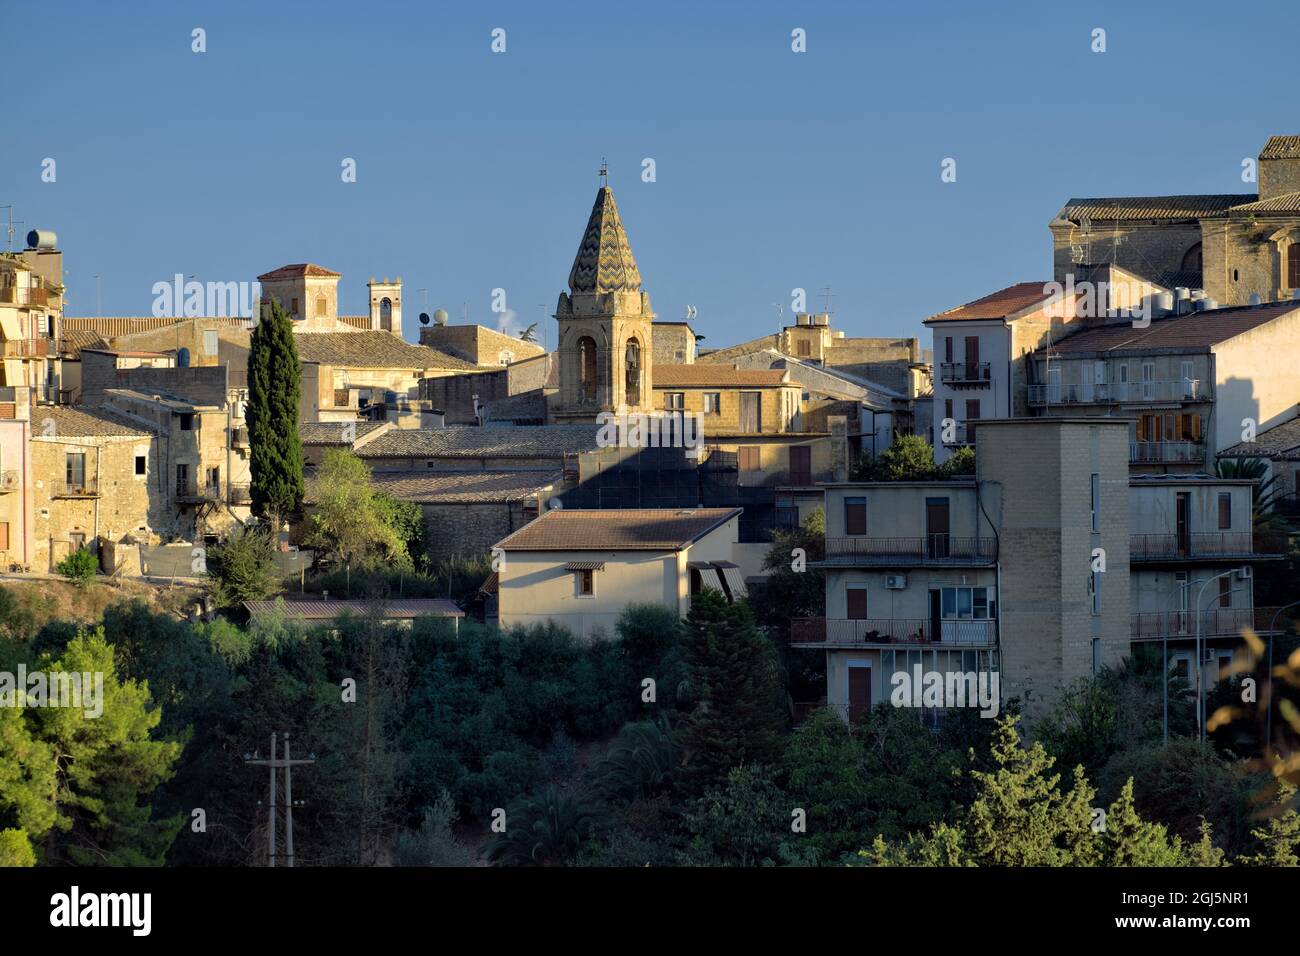 Cultura e architettura in Sicilia vista sulle case e sul campanile di Mazzarino (Caltanissetta) Foto Stock